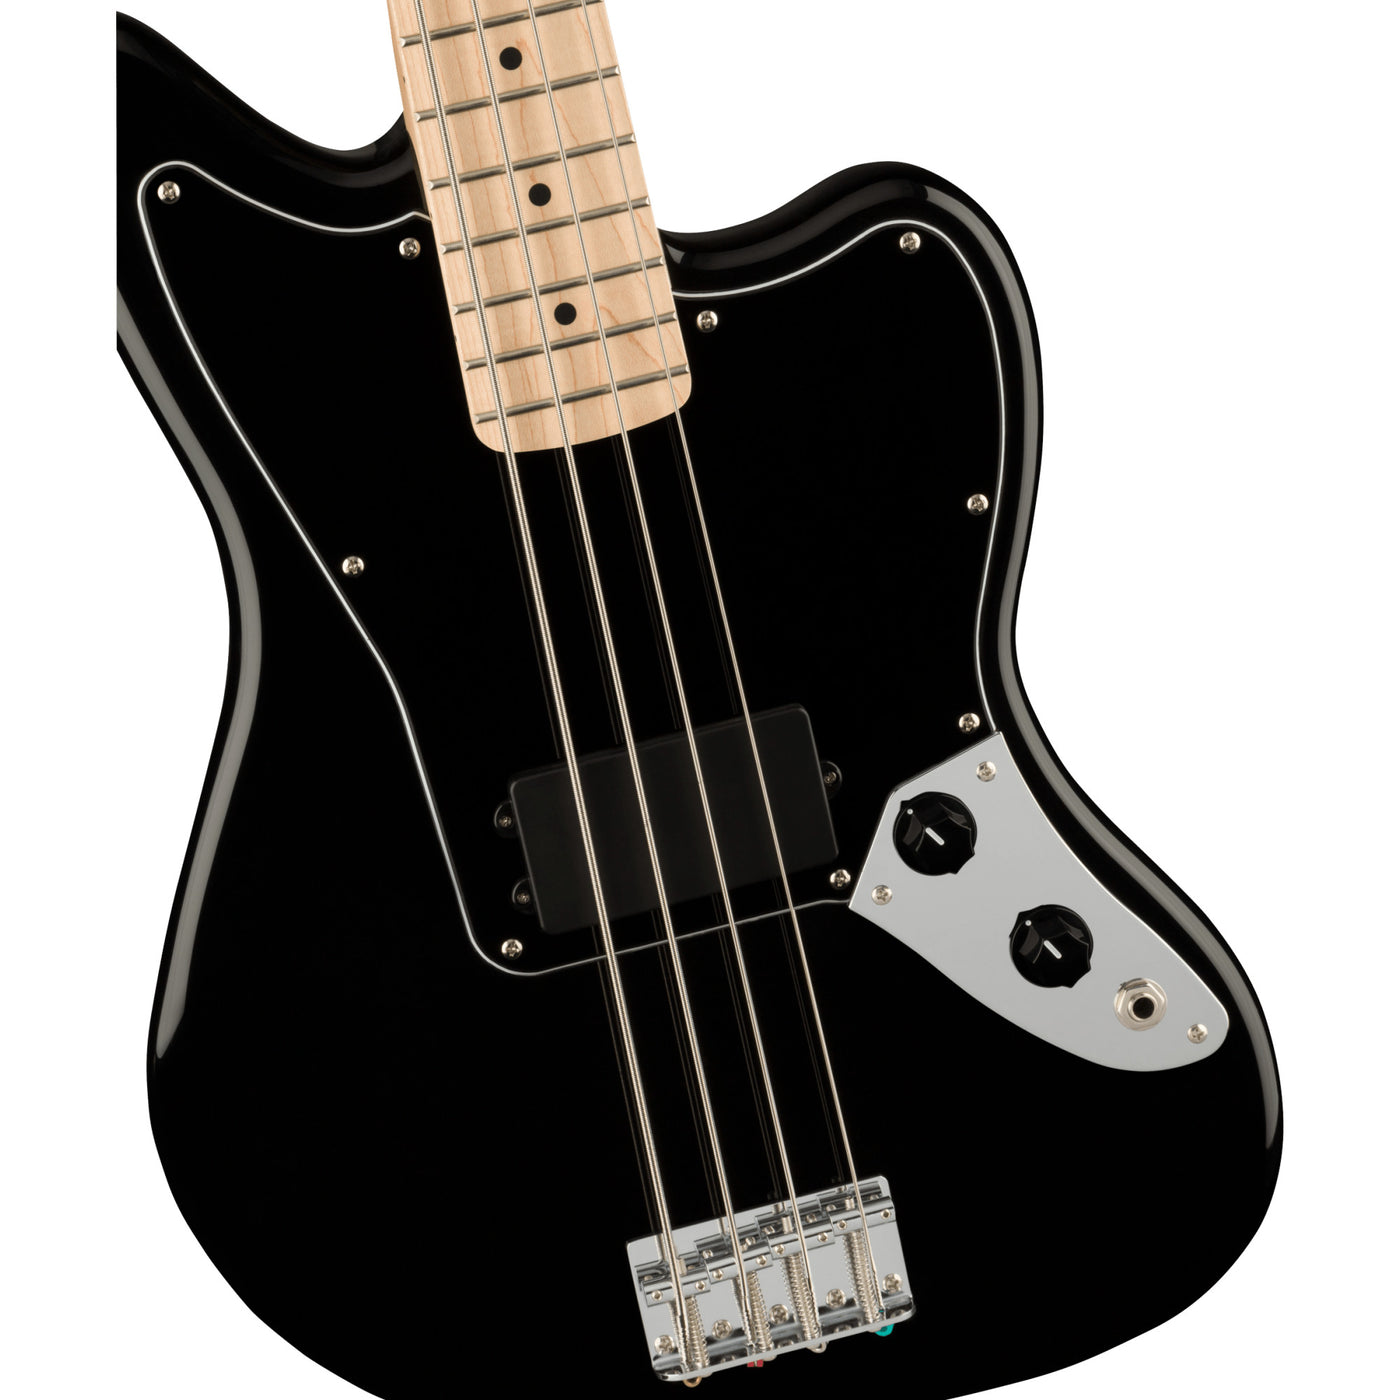 Fender Affinity Series Jaguar Bass H, Black (0378503506)